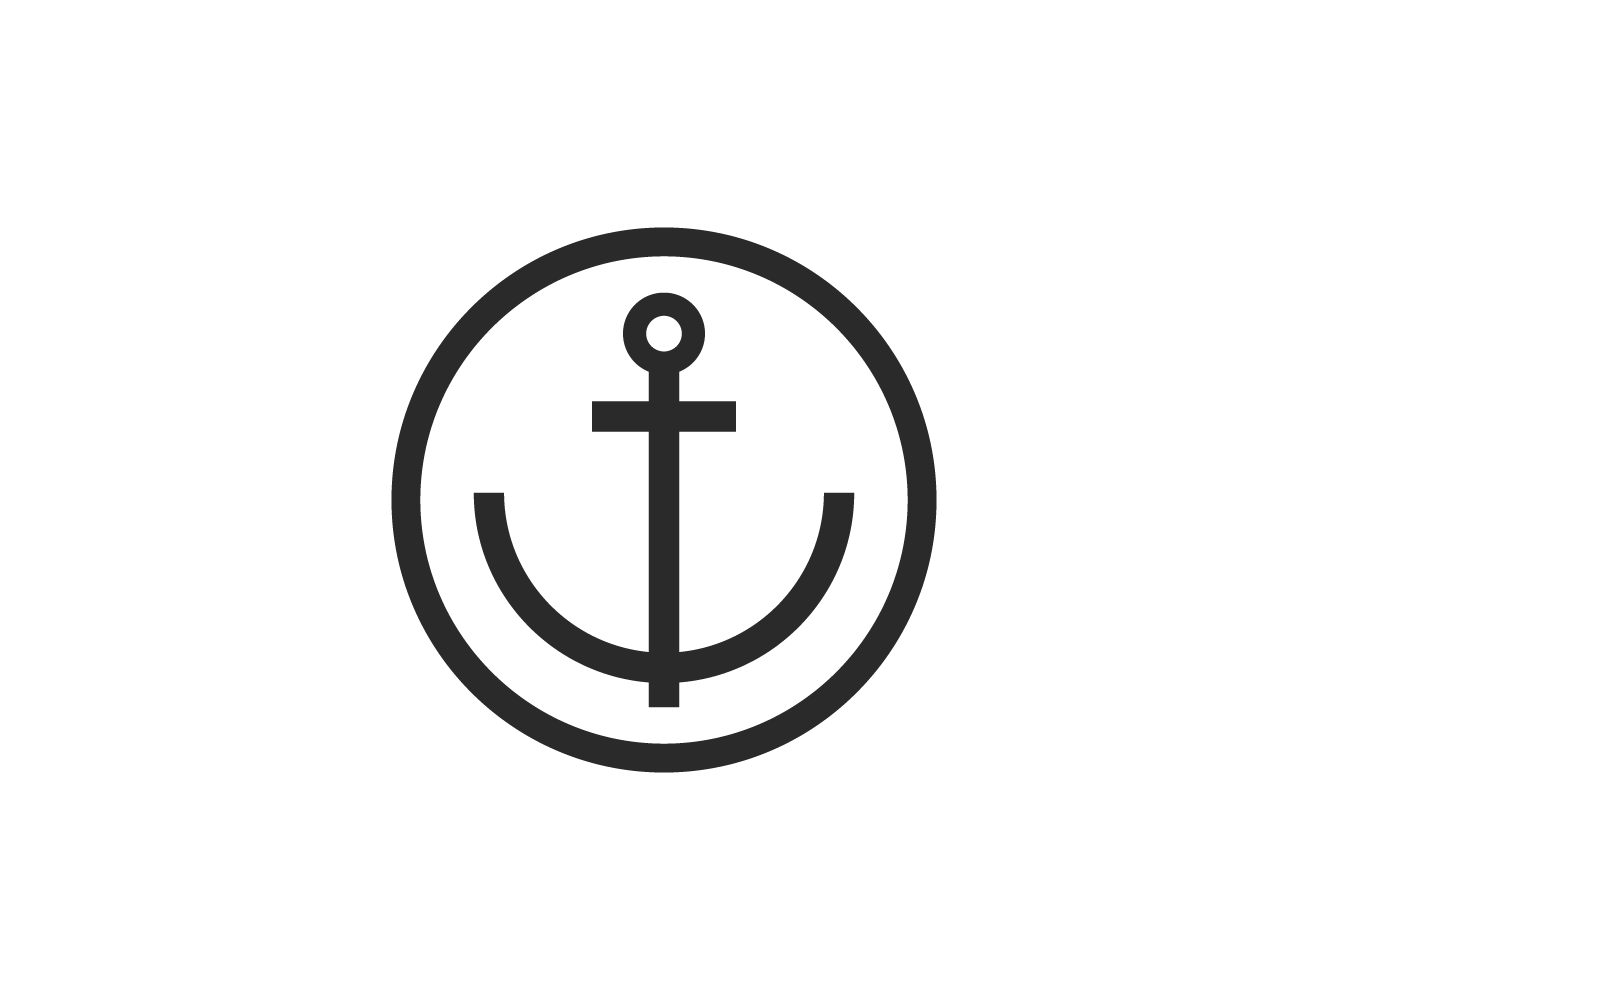 Anchor logo illustration vector design Logo Template